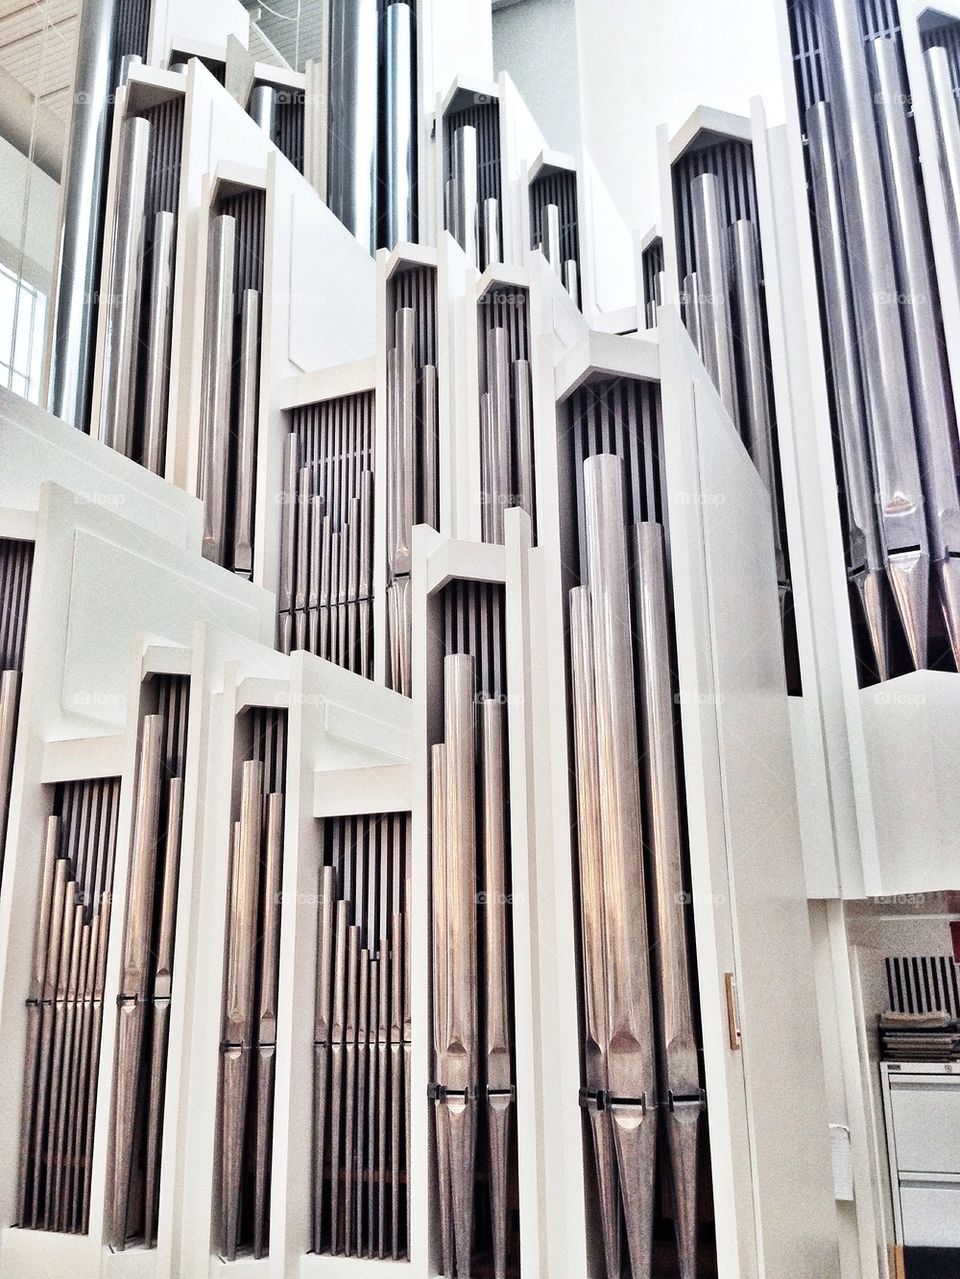 Church organ 